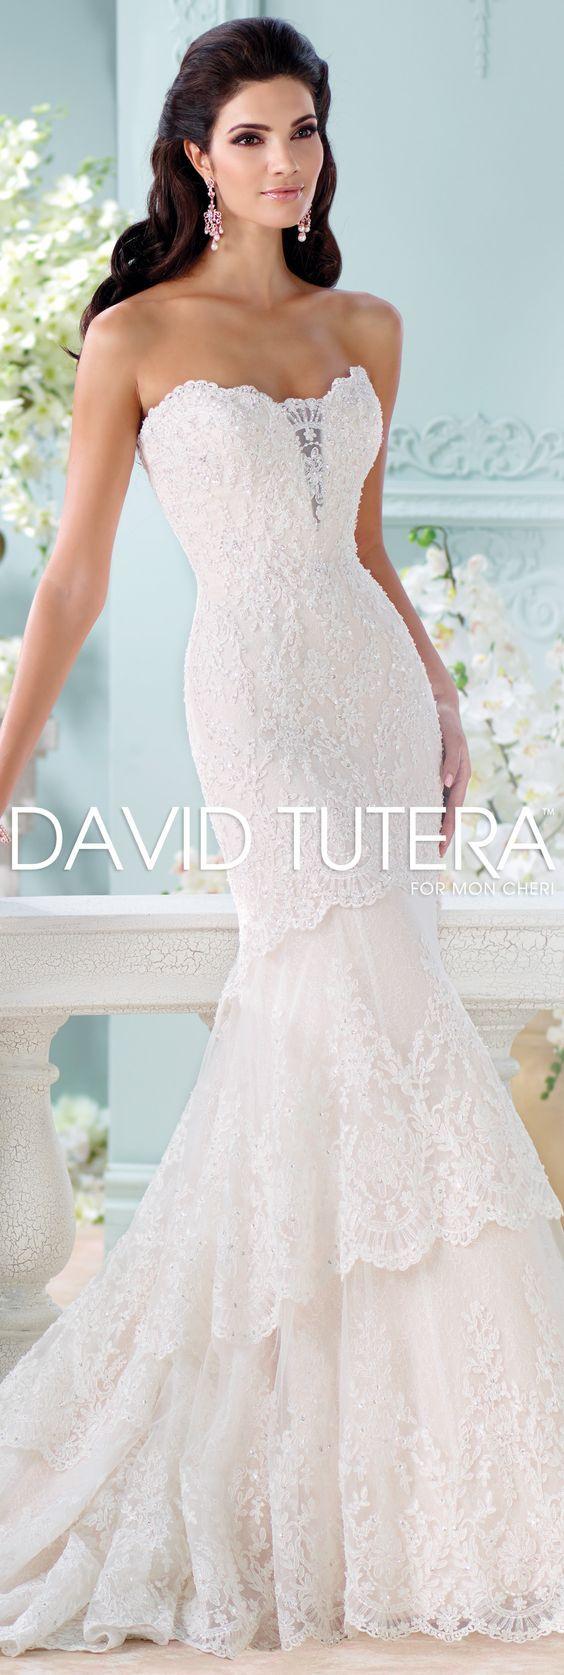 Mariage - Gorgeous Wedding Dresses By David Tutera For Mon Cheri